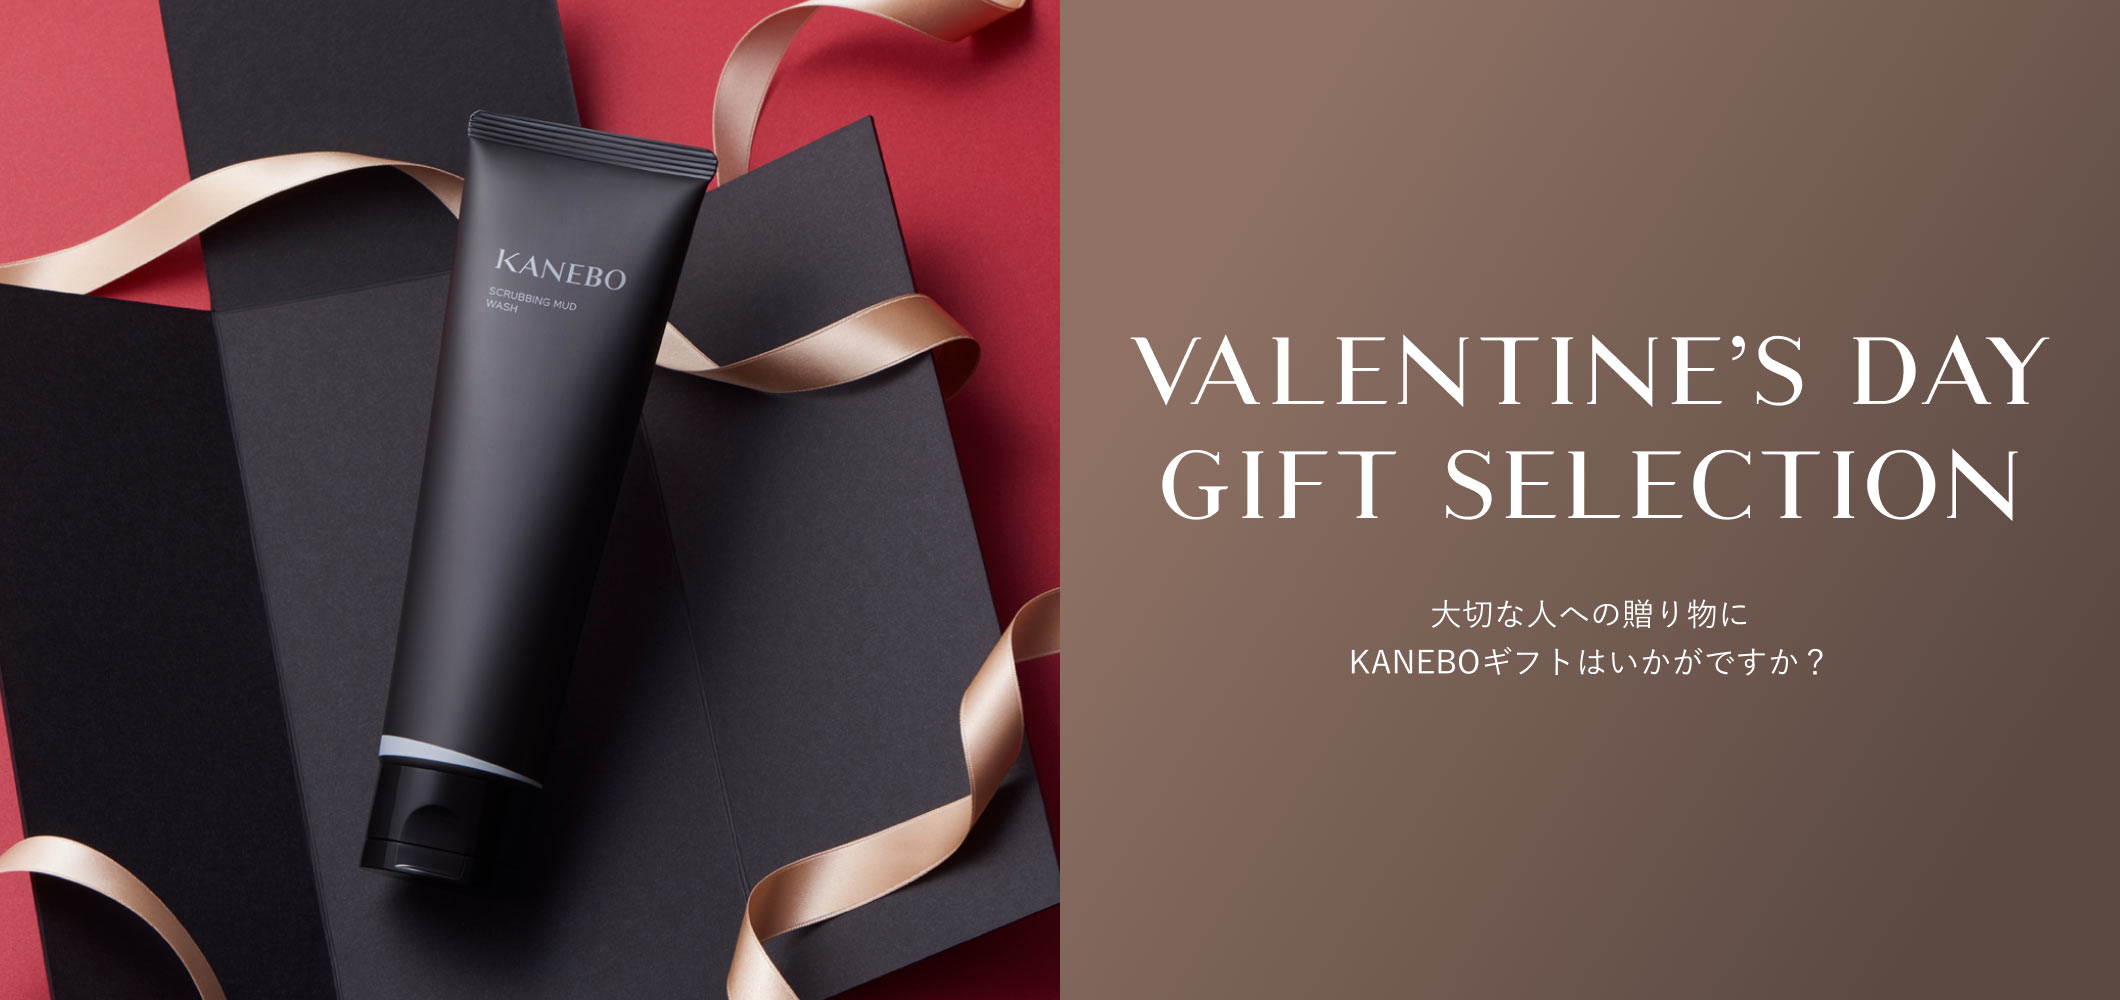 VALENTINE’S DAY GIFT SELECTION 大切な人への贈り物にKANEBOギフトはいかがですか？